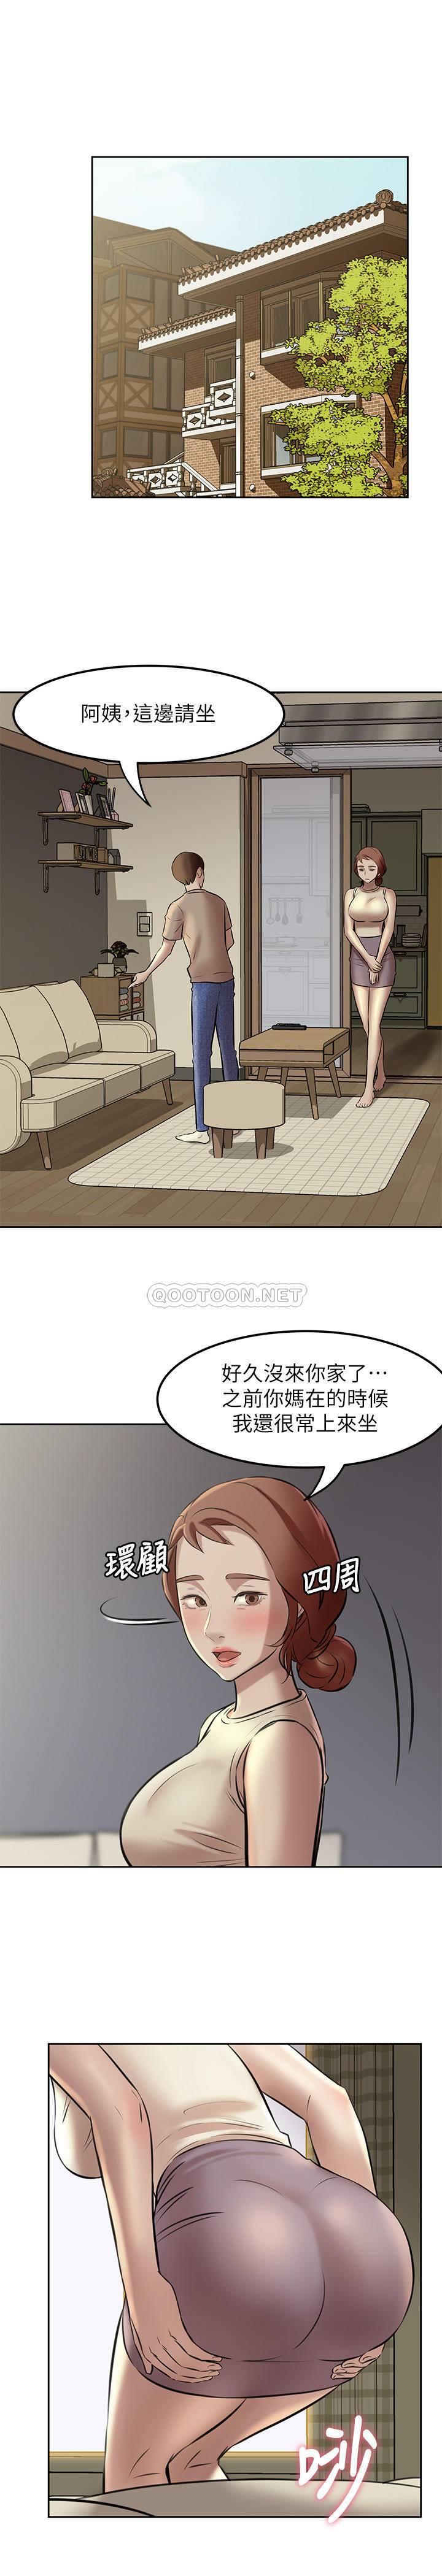 韩国污漫画 小褲褲筆記 第4话 - mō两下没关系吧? 3